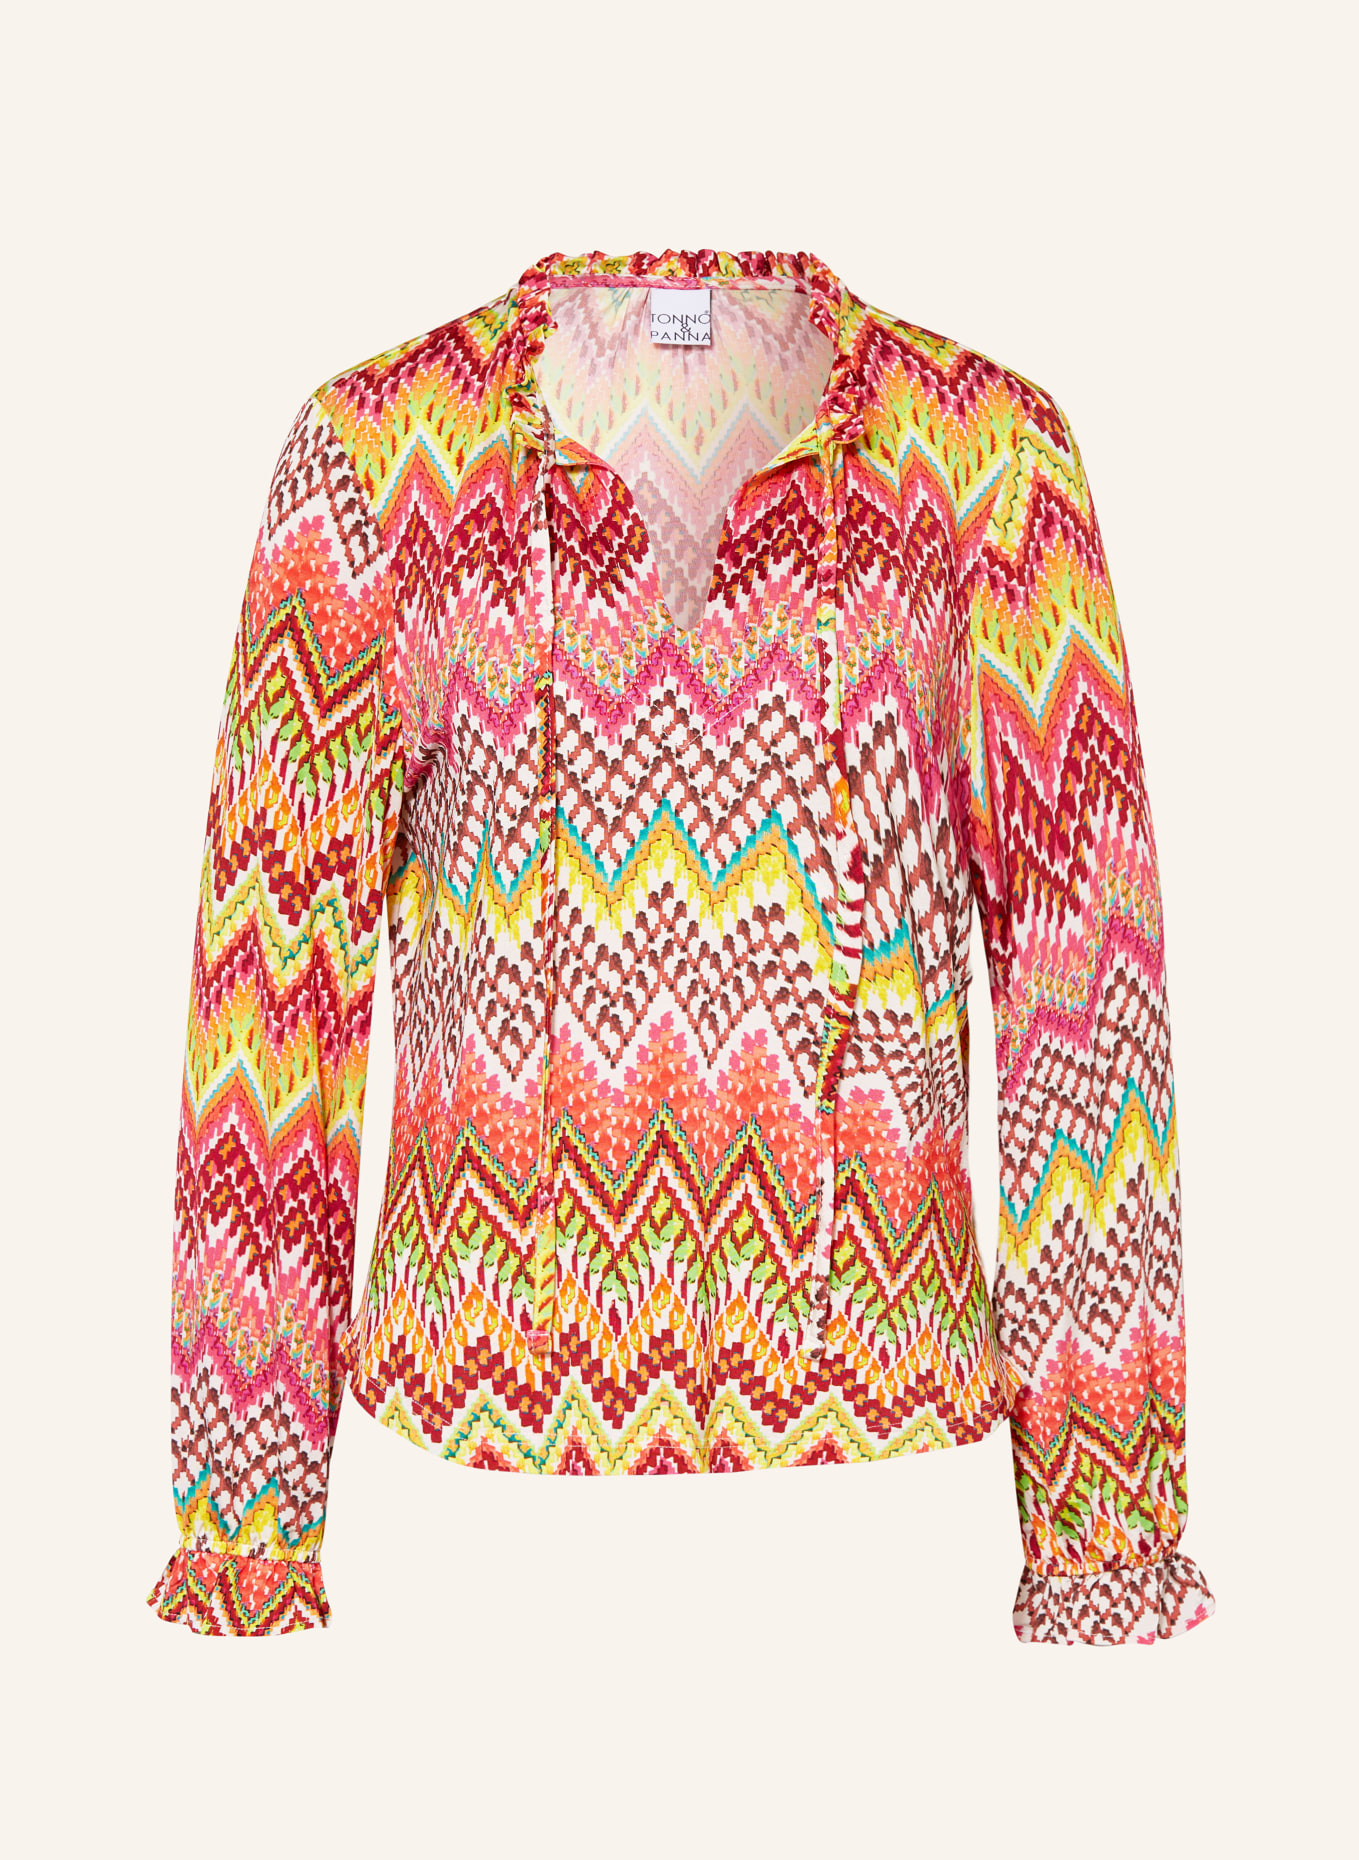 TONNO & PANNA Blusenshirt, Farbe: GELB/ PINK/ BRAUN (Bild 1)